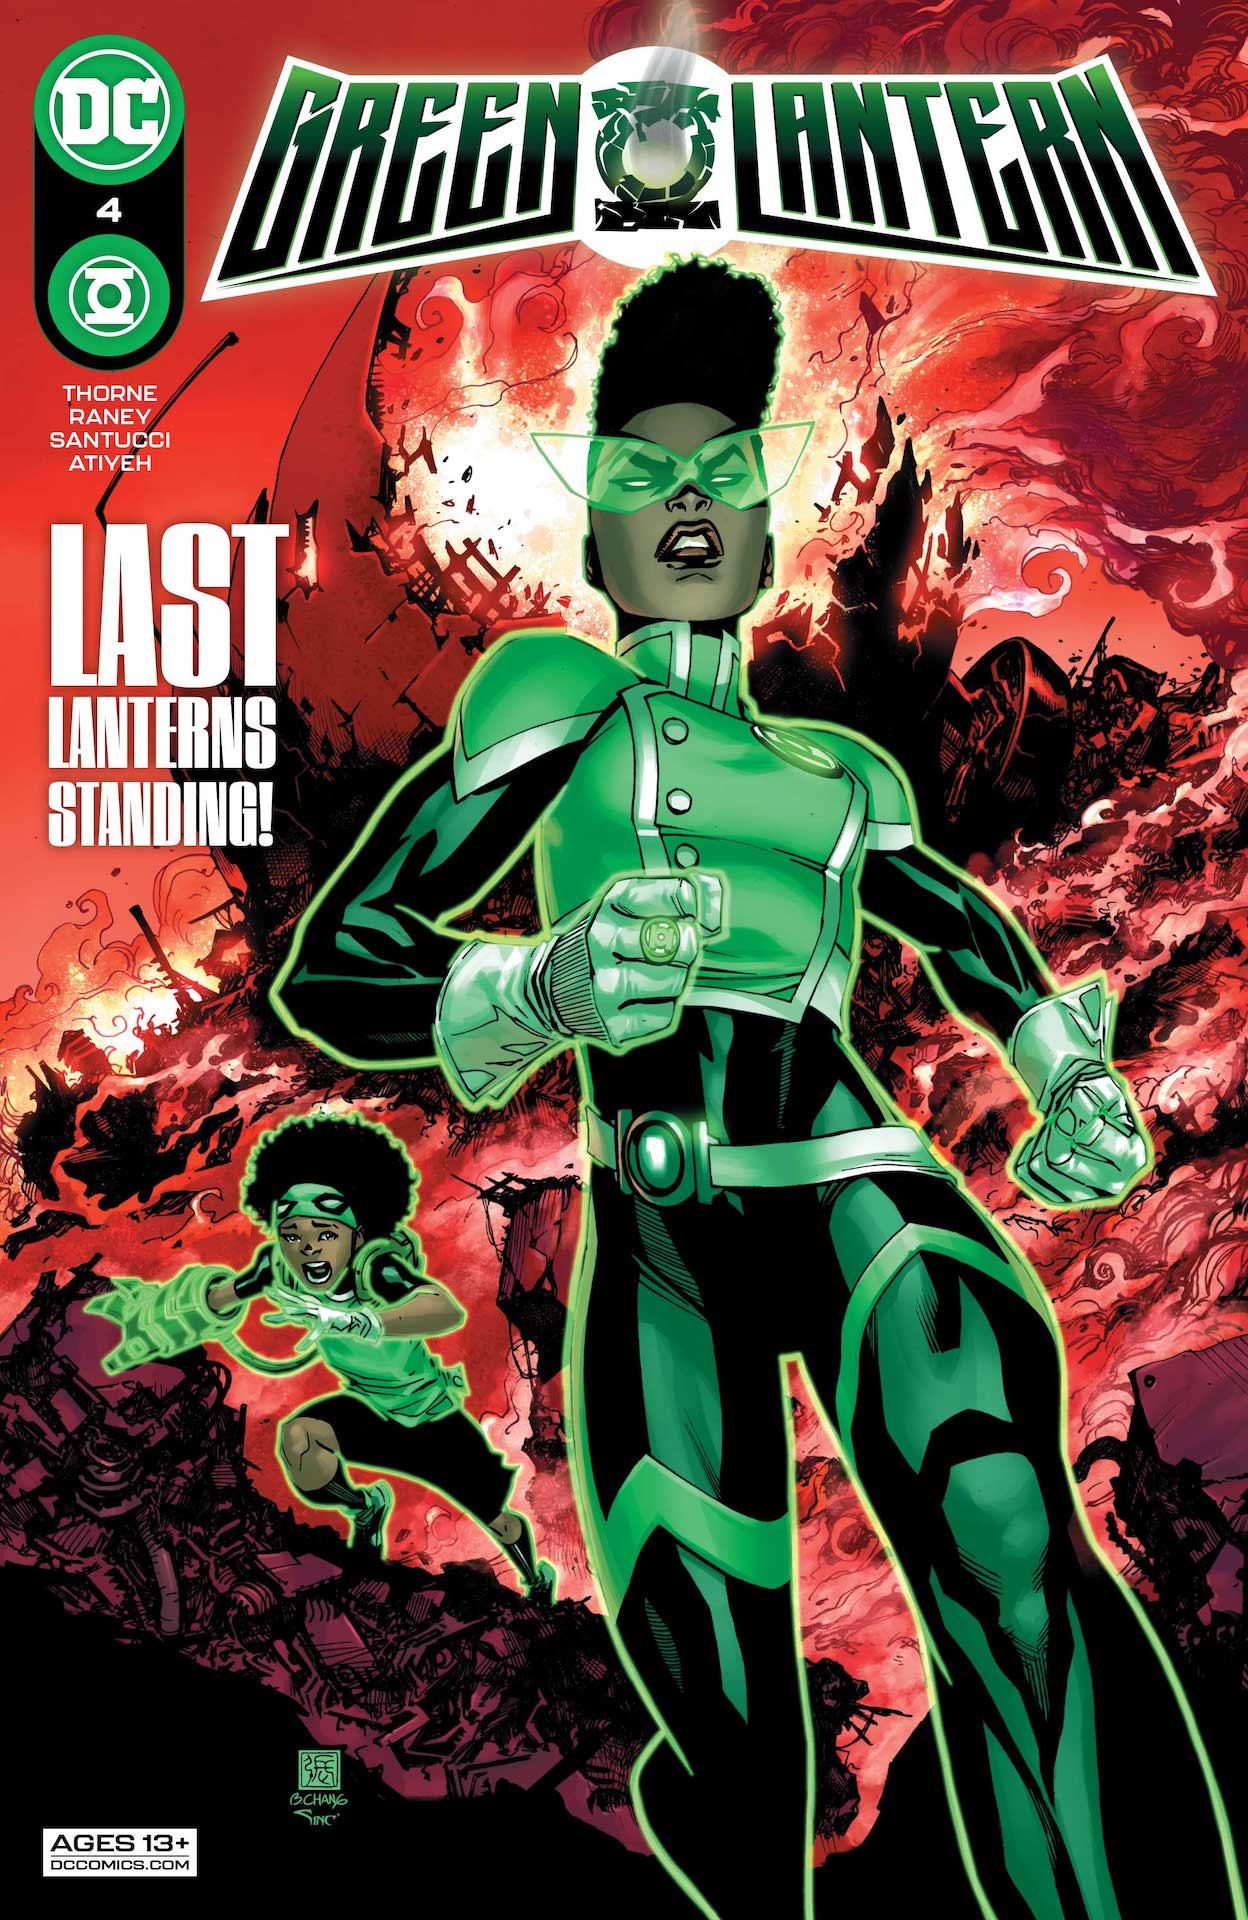 DC Preview: Green Lantern #4